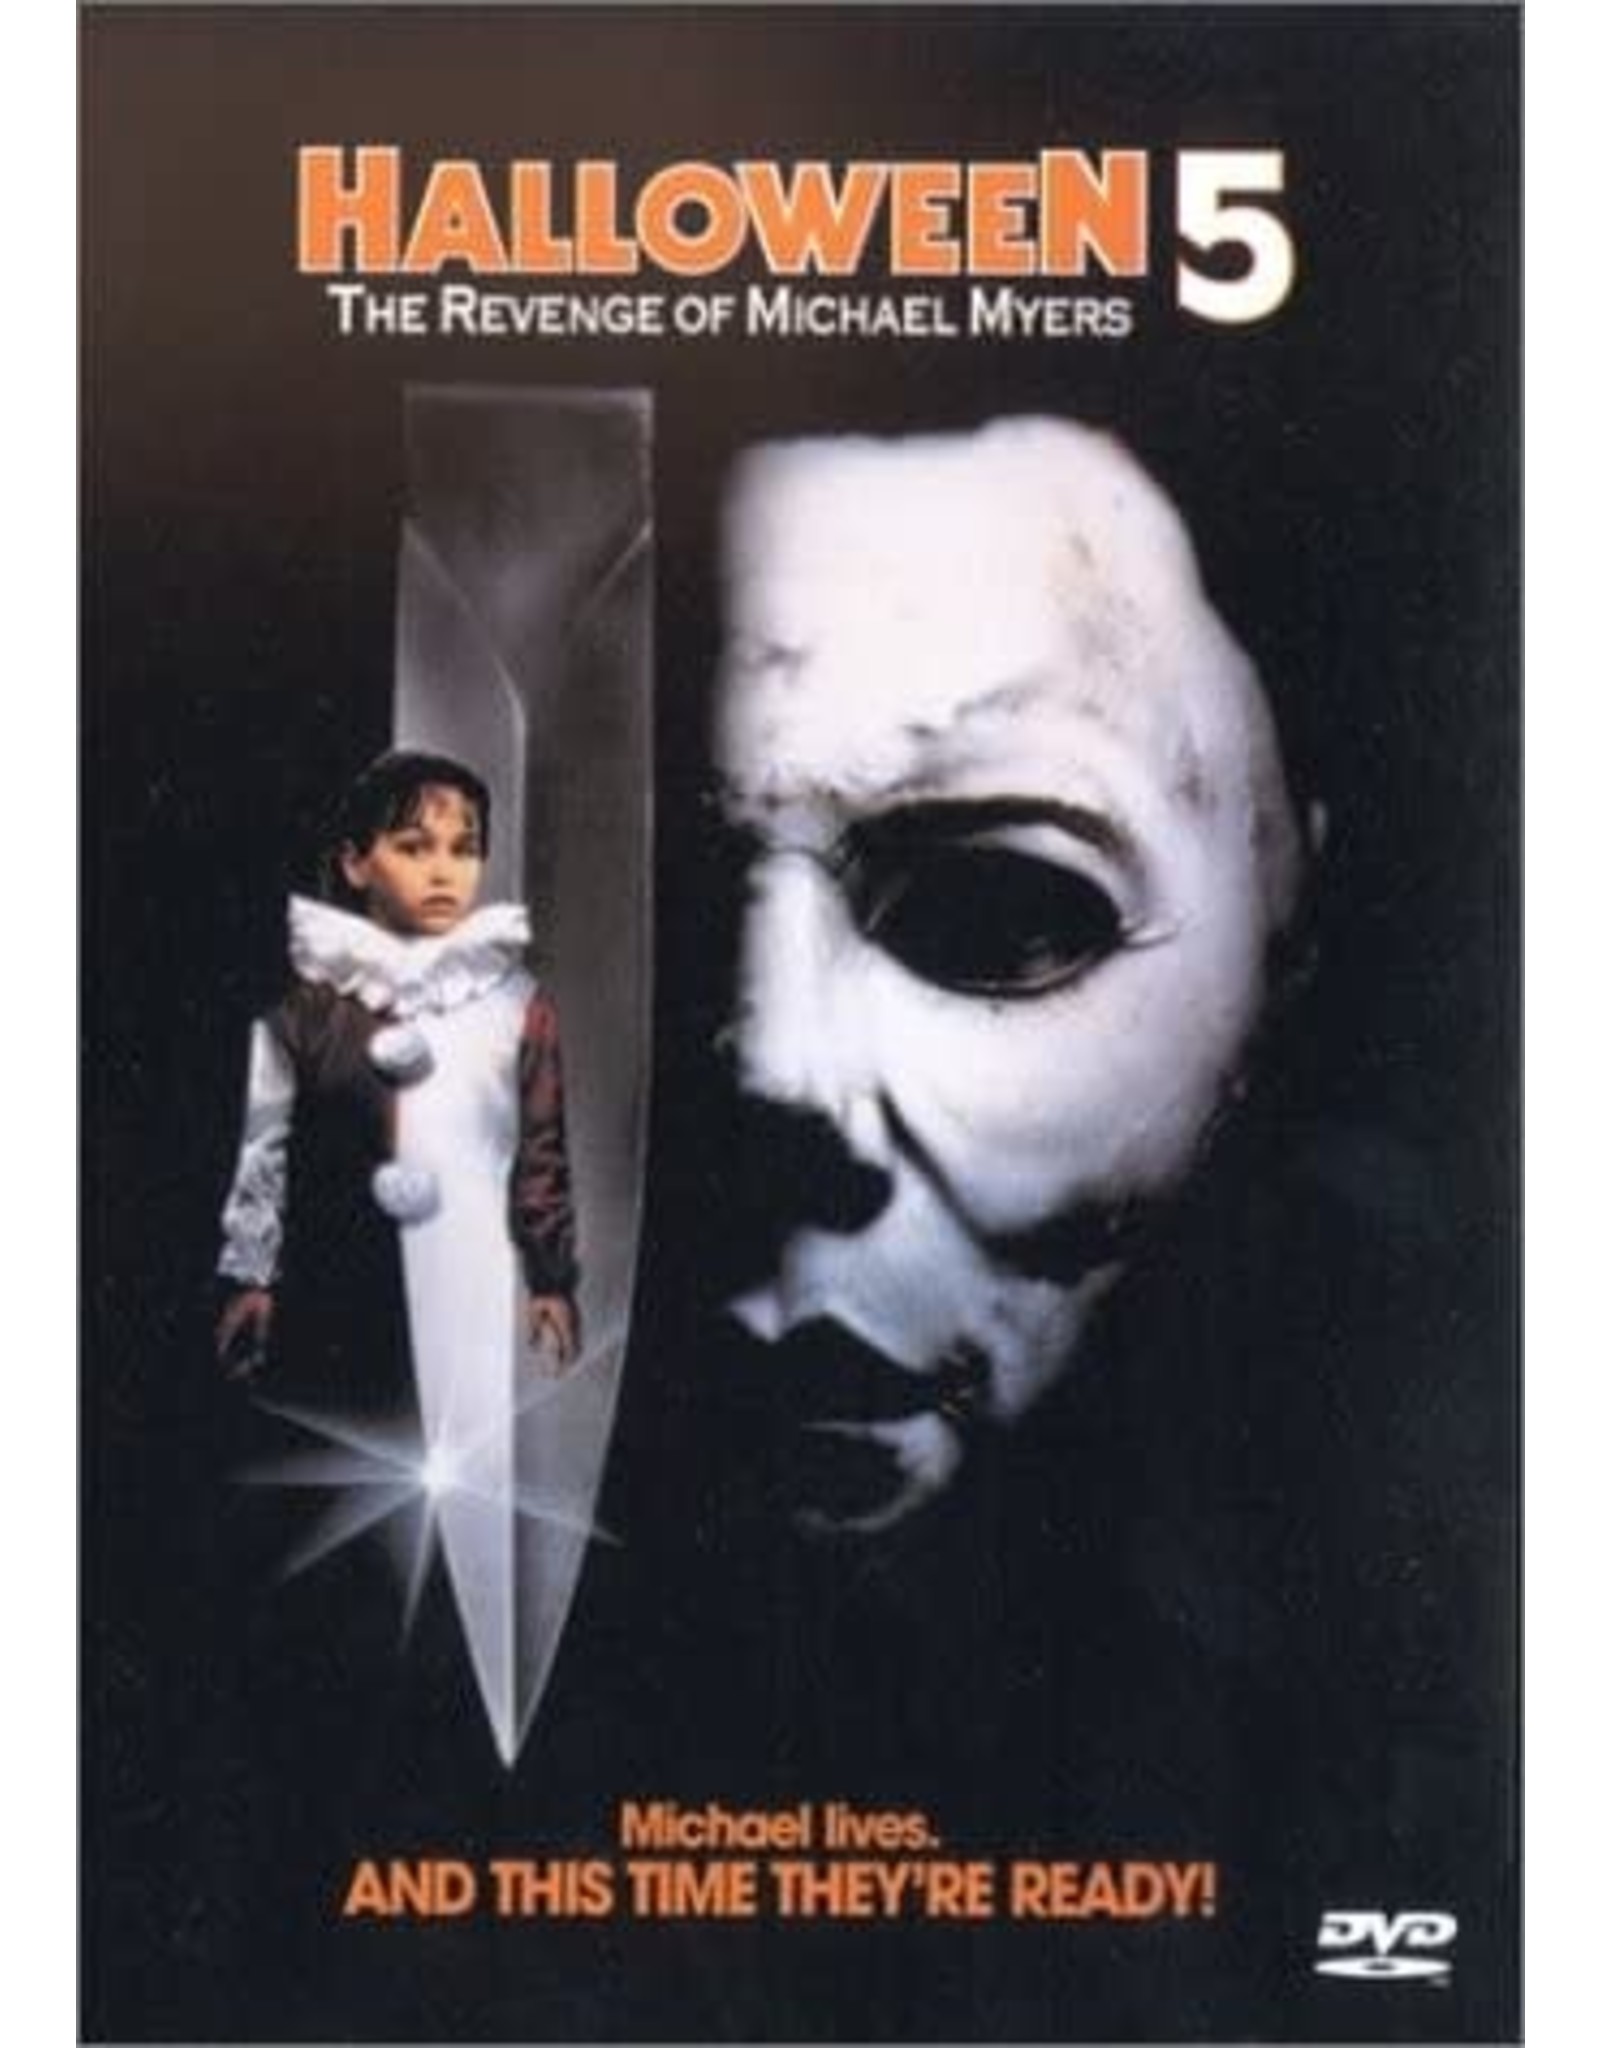 Horror Halloween 5 The Revenge of Michael Myers